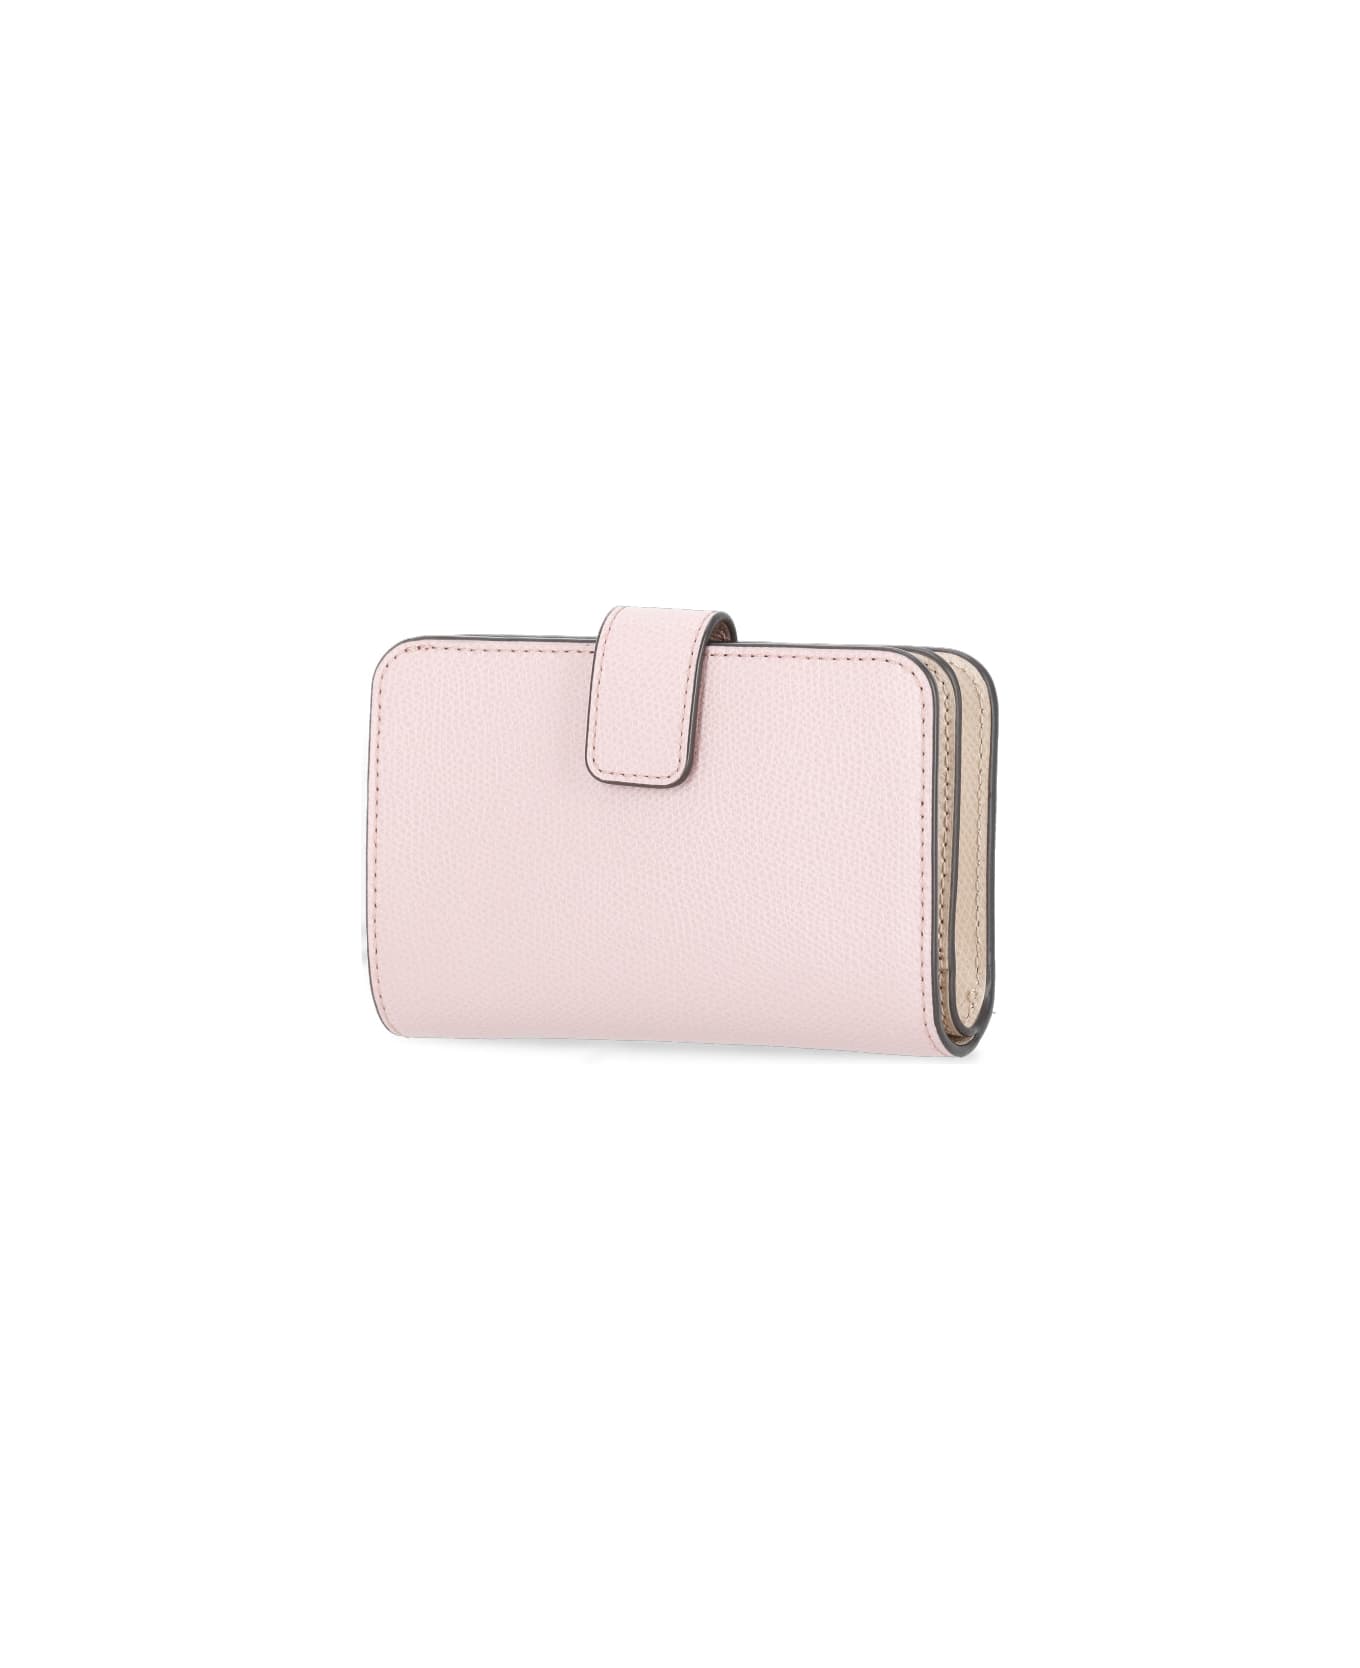 Furla Camelia Wallet - Pink 財布